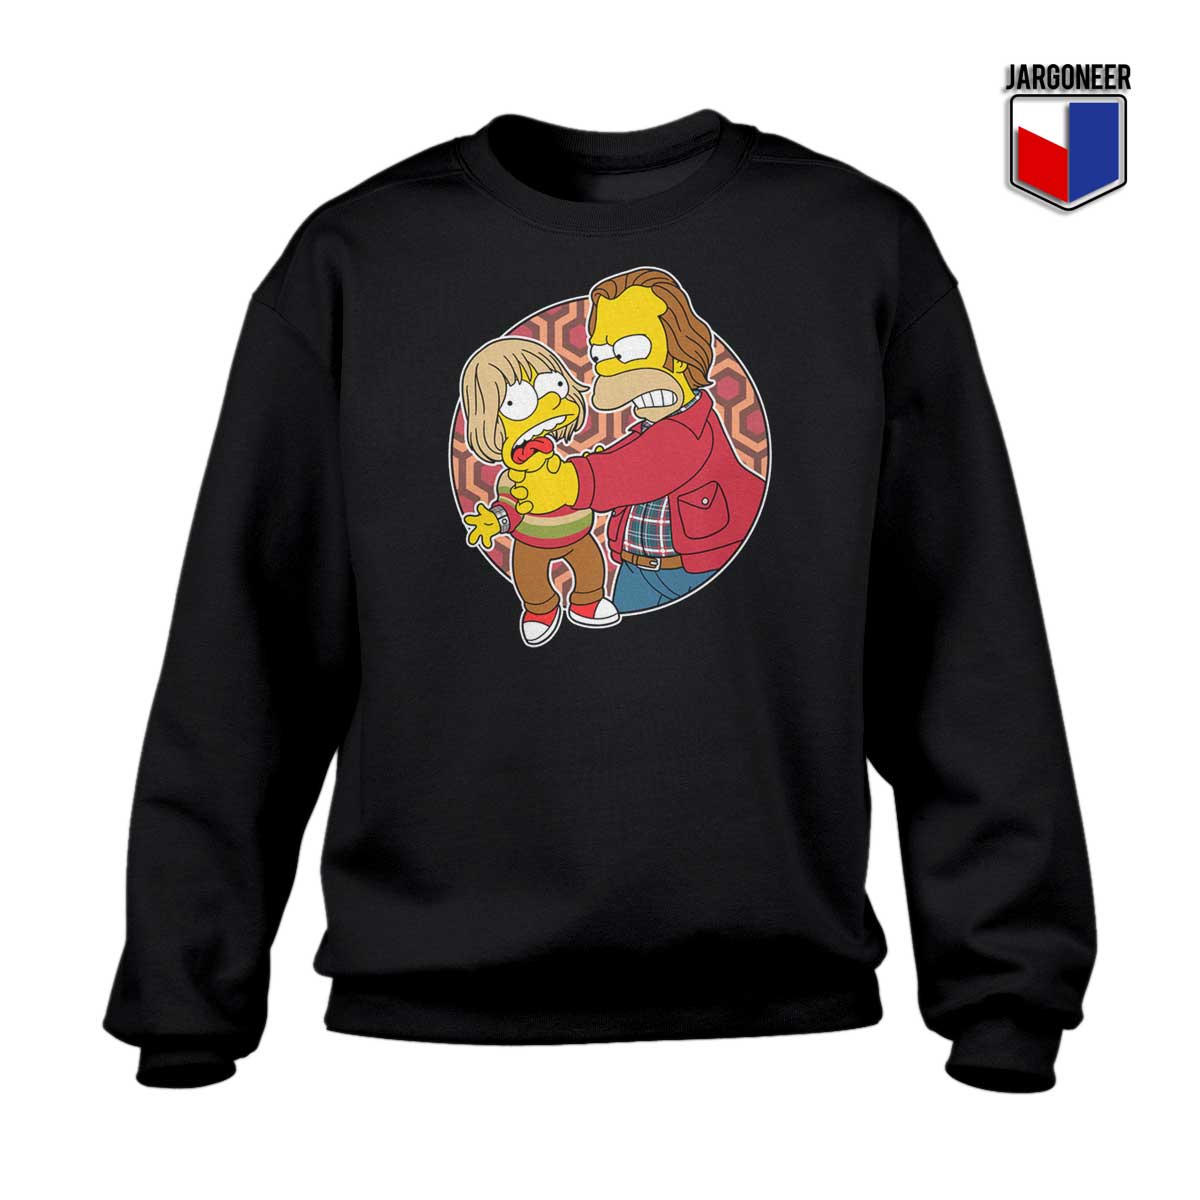 Bart Little Torrance Sweatshirt - Shop Unique Graphic Cool Shirt Designs